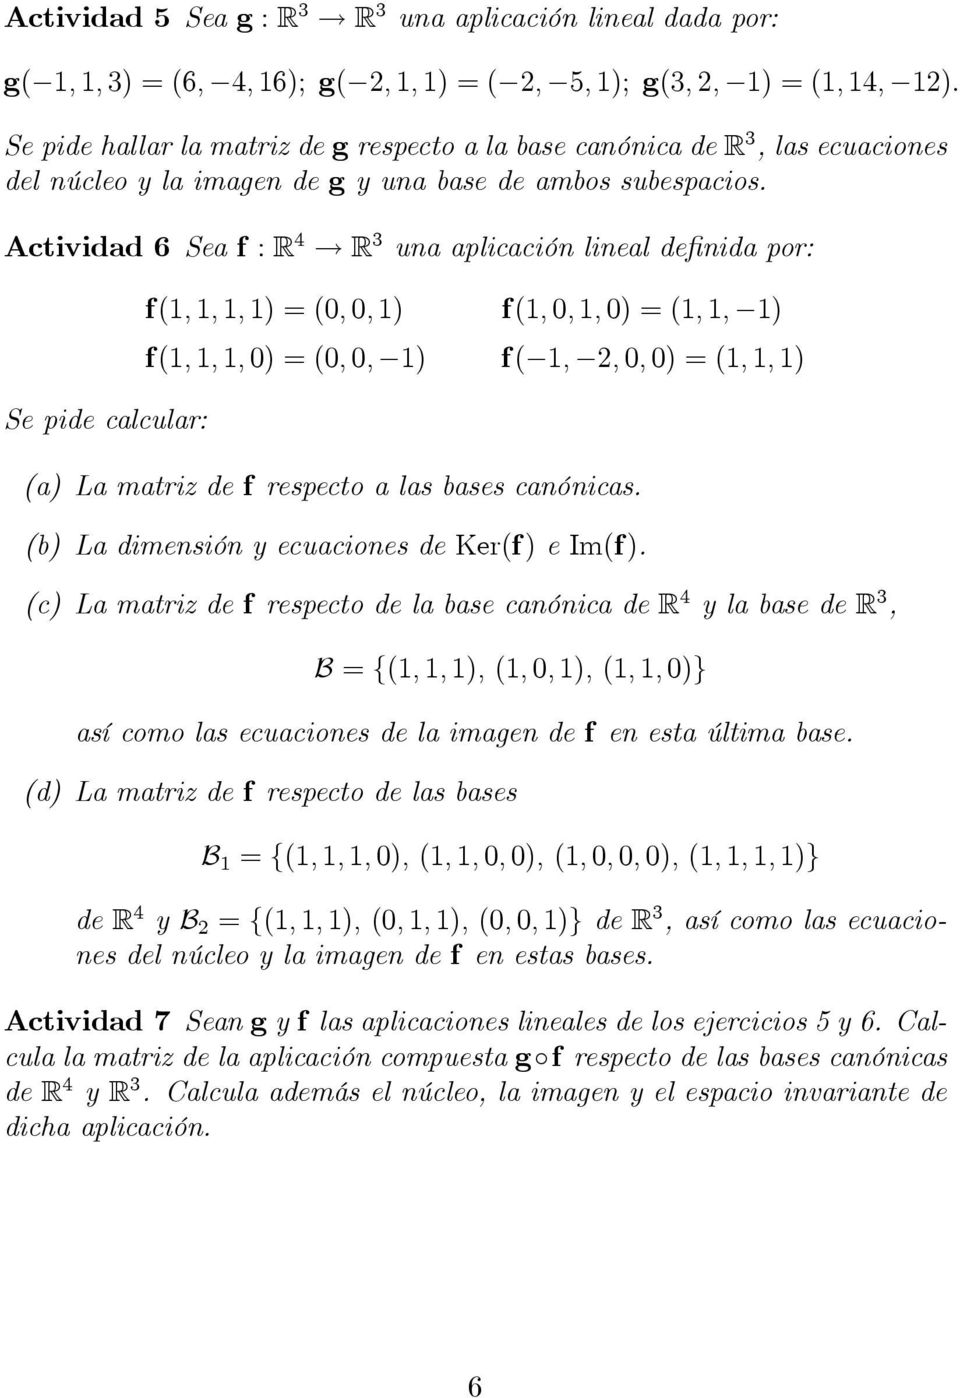 Actividad 6 Sea f : R 4 R 3 una aplicación lineal definida por: Se pide calcular: f(1, 1, 1, 1) = (0, 0, 1) f(1, 0, 1, 0) = (1, 1, 1) f(1, 1, 1, 0) = (0, 0, 1) f( 1, 2, 0, 0) = (1, 1, 1) (a) La